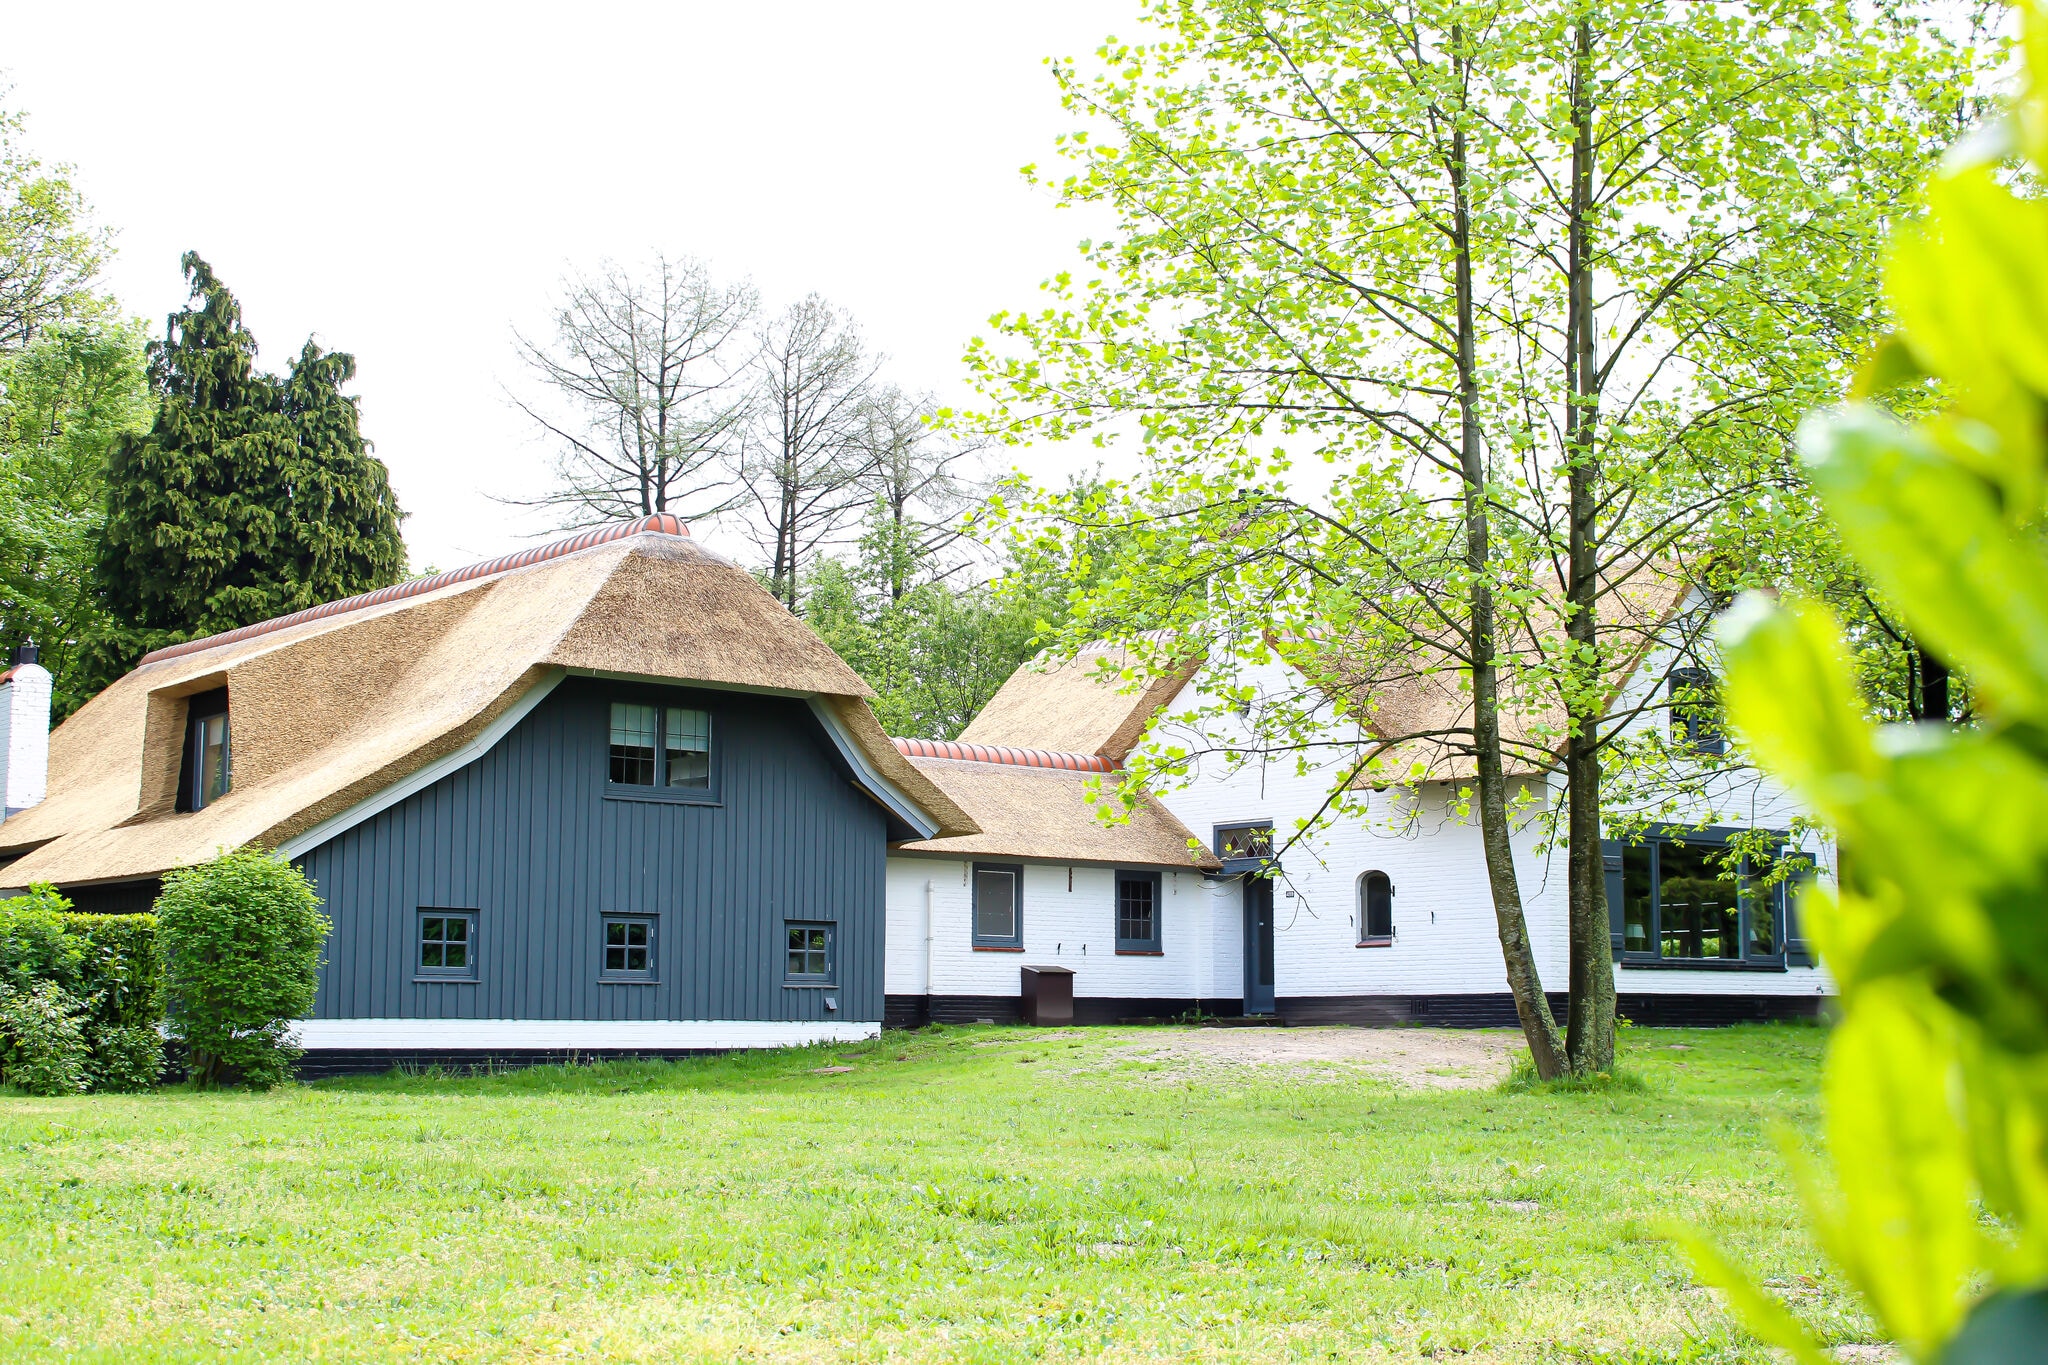 Villa in de Veluwe in de prachtige natuur